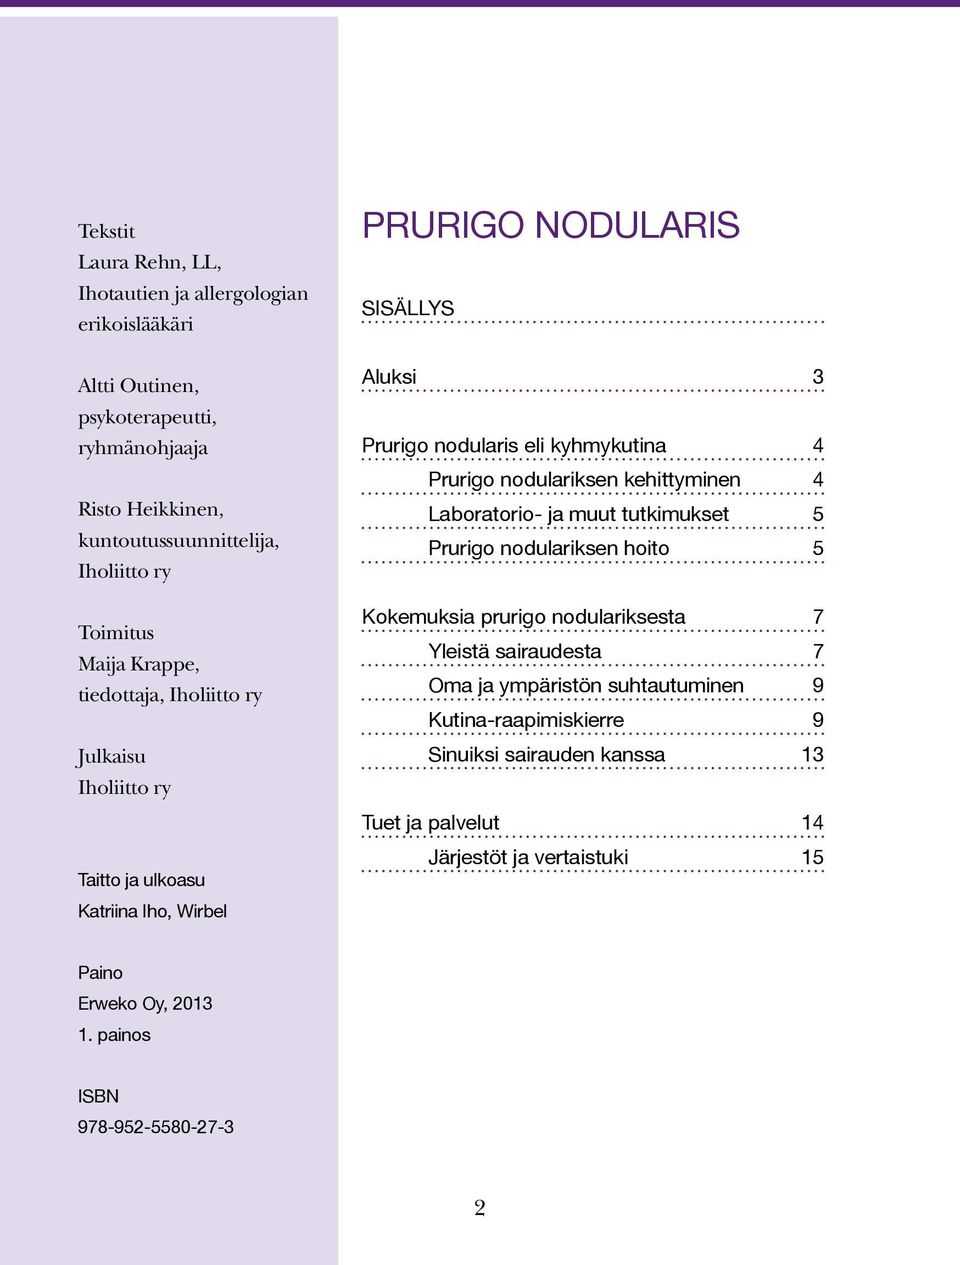 kyhmykutina 4 Prurigo nodulariksen kehittyminen 4 Laboratorio- ja muut tutkimukset 5 Prurigo nodulariksen hoito 5 Kokemuksia prurigo nodulariksesta 7 Yleistä sairaudesta 7